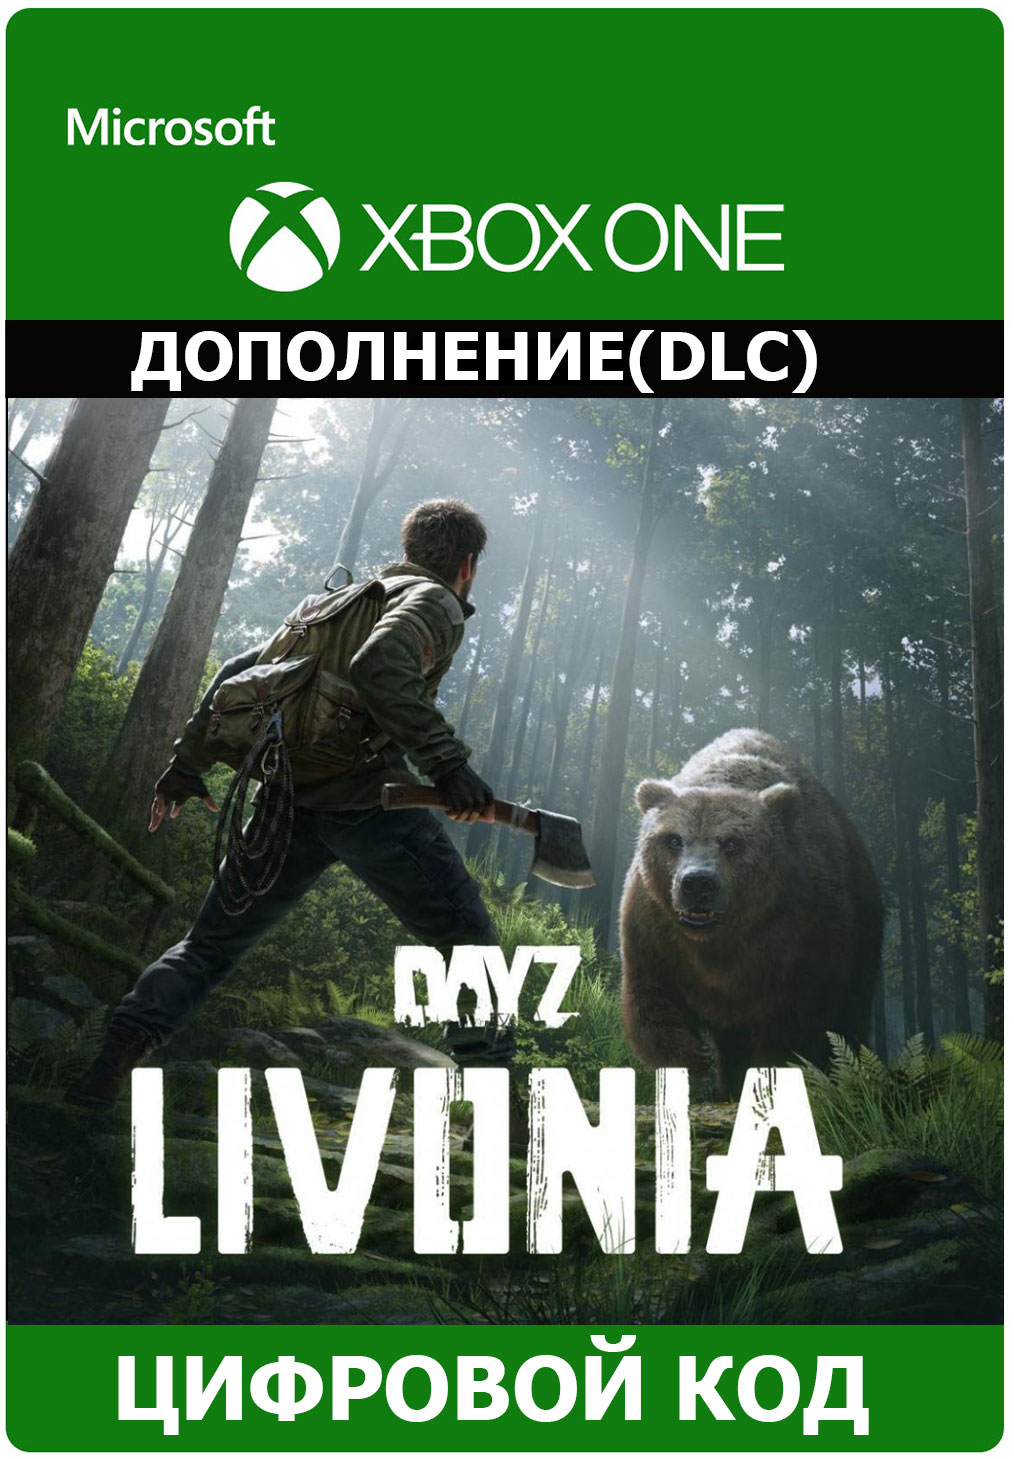 ✅ DayZ Livonia DLC XBOX ONE X|S KEY / Digital code 🔑